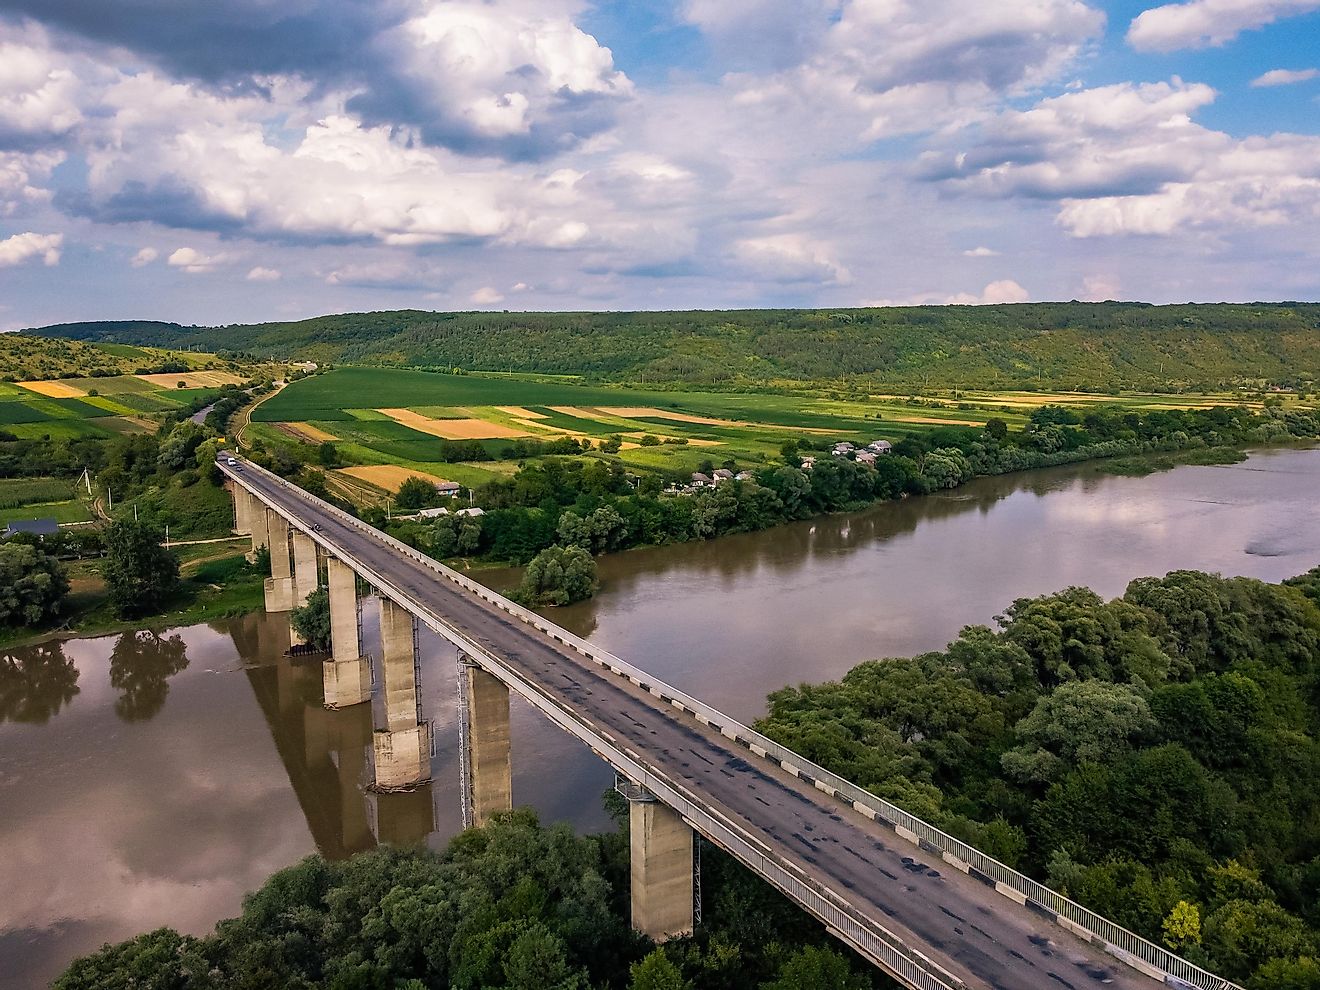 The Dniester River in Ukraine.